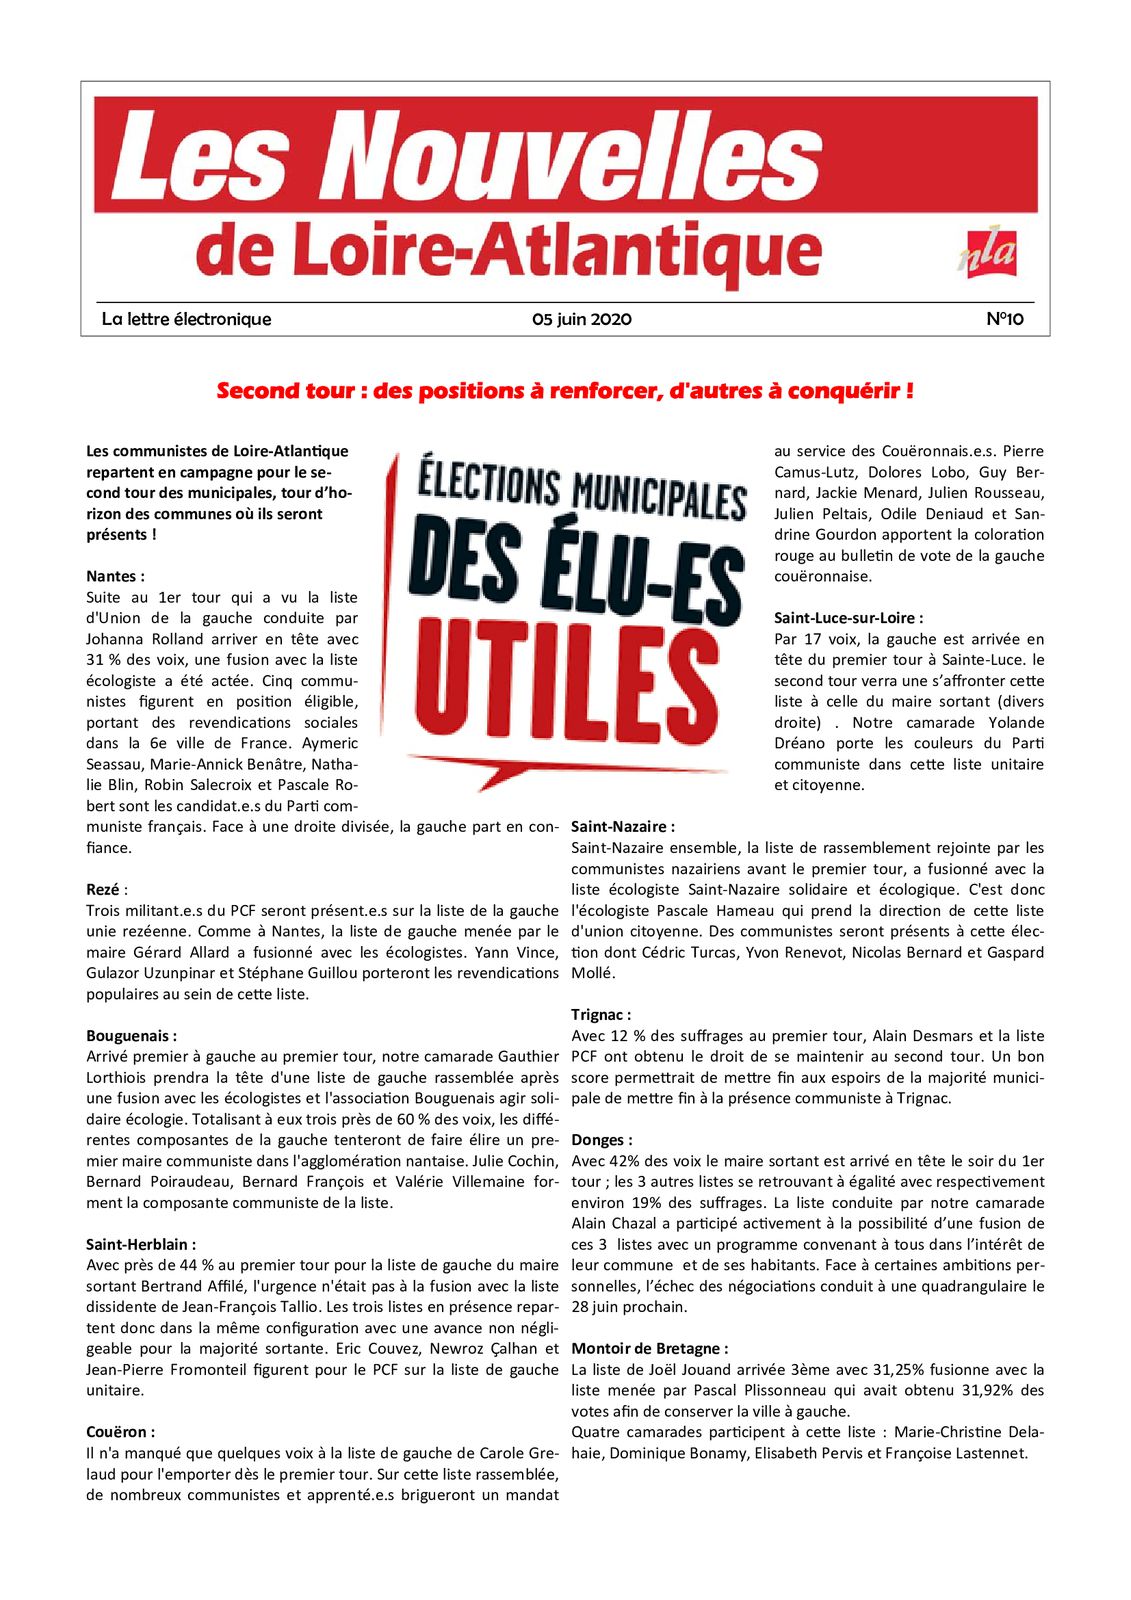 Les Nouvelles de Loire-Atlantique du 5 juin 2020